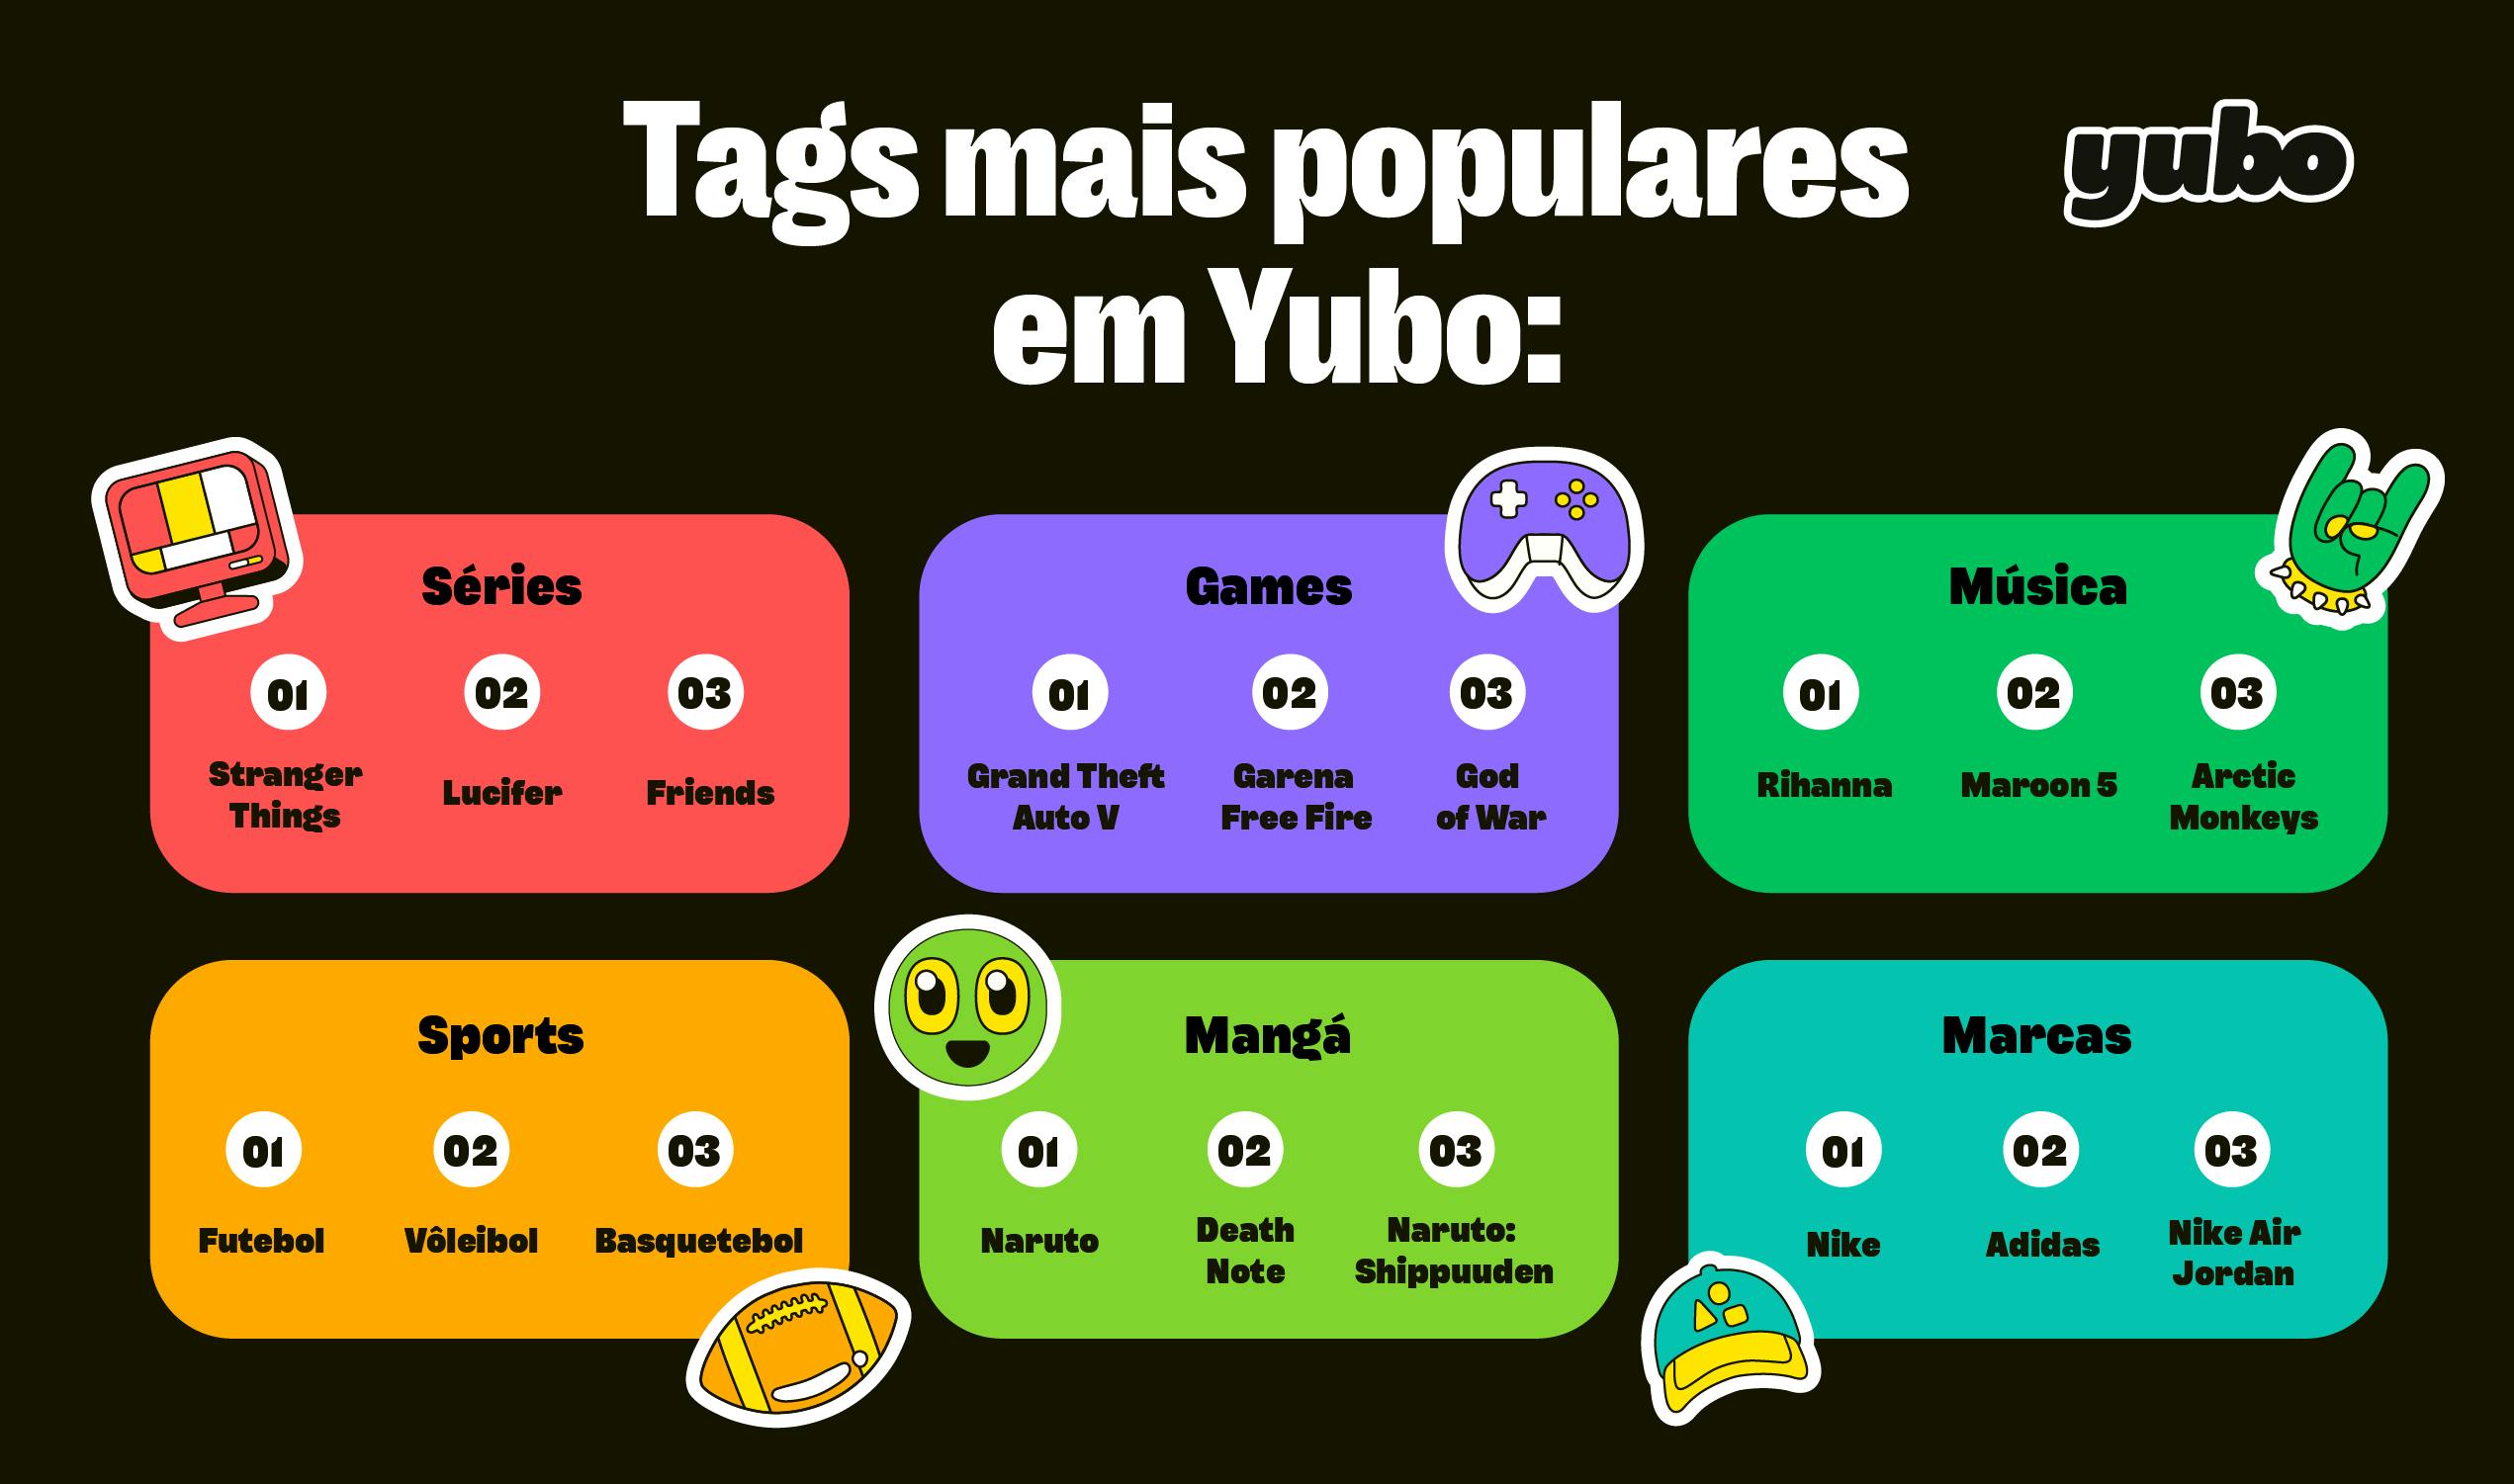 Tags mais populares no Brasil. 6 categorias estão presentes: Séries, Games, Música, Sports, Mangá e Marcas